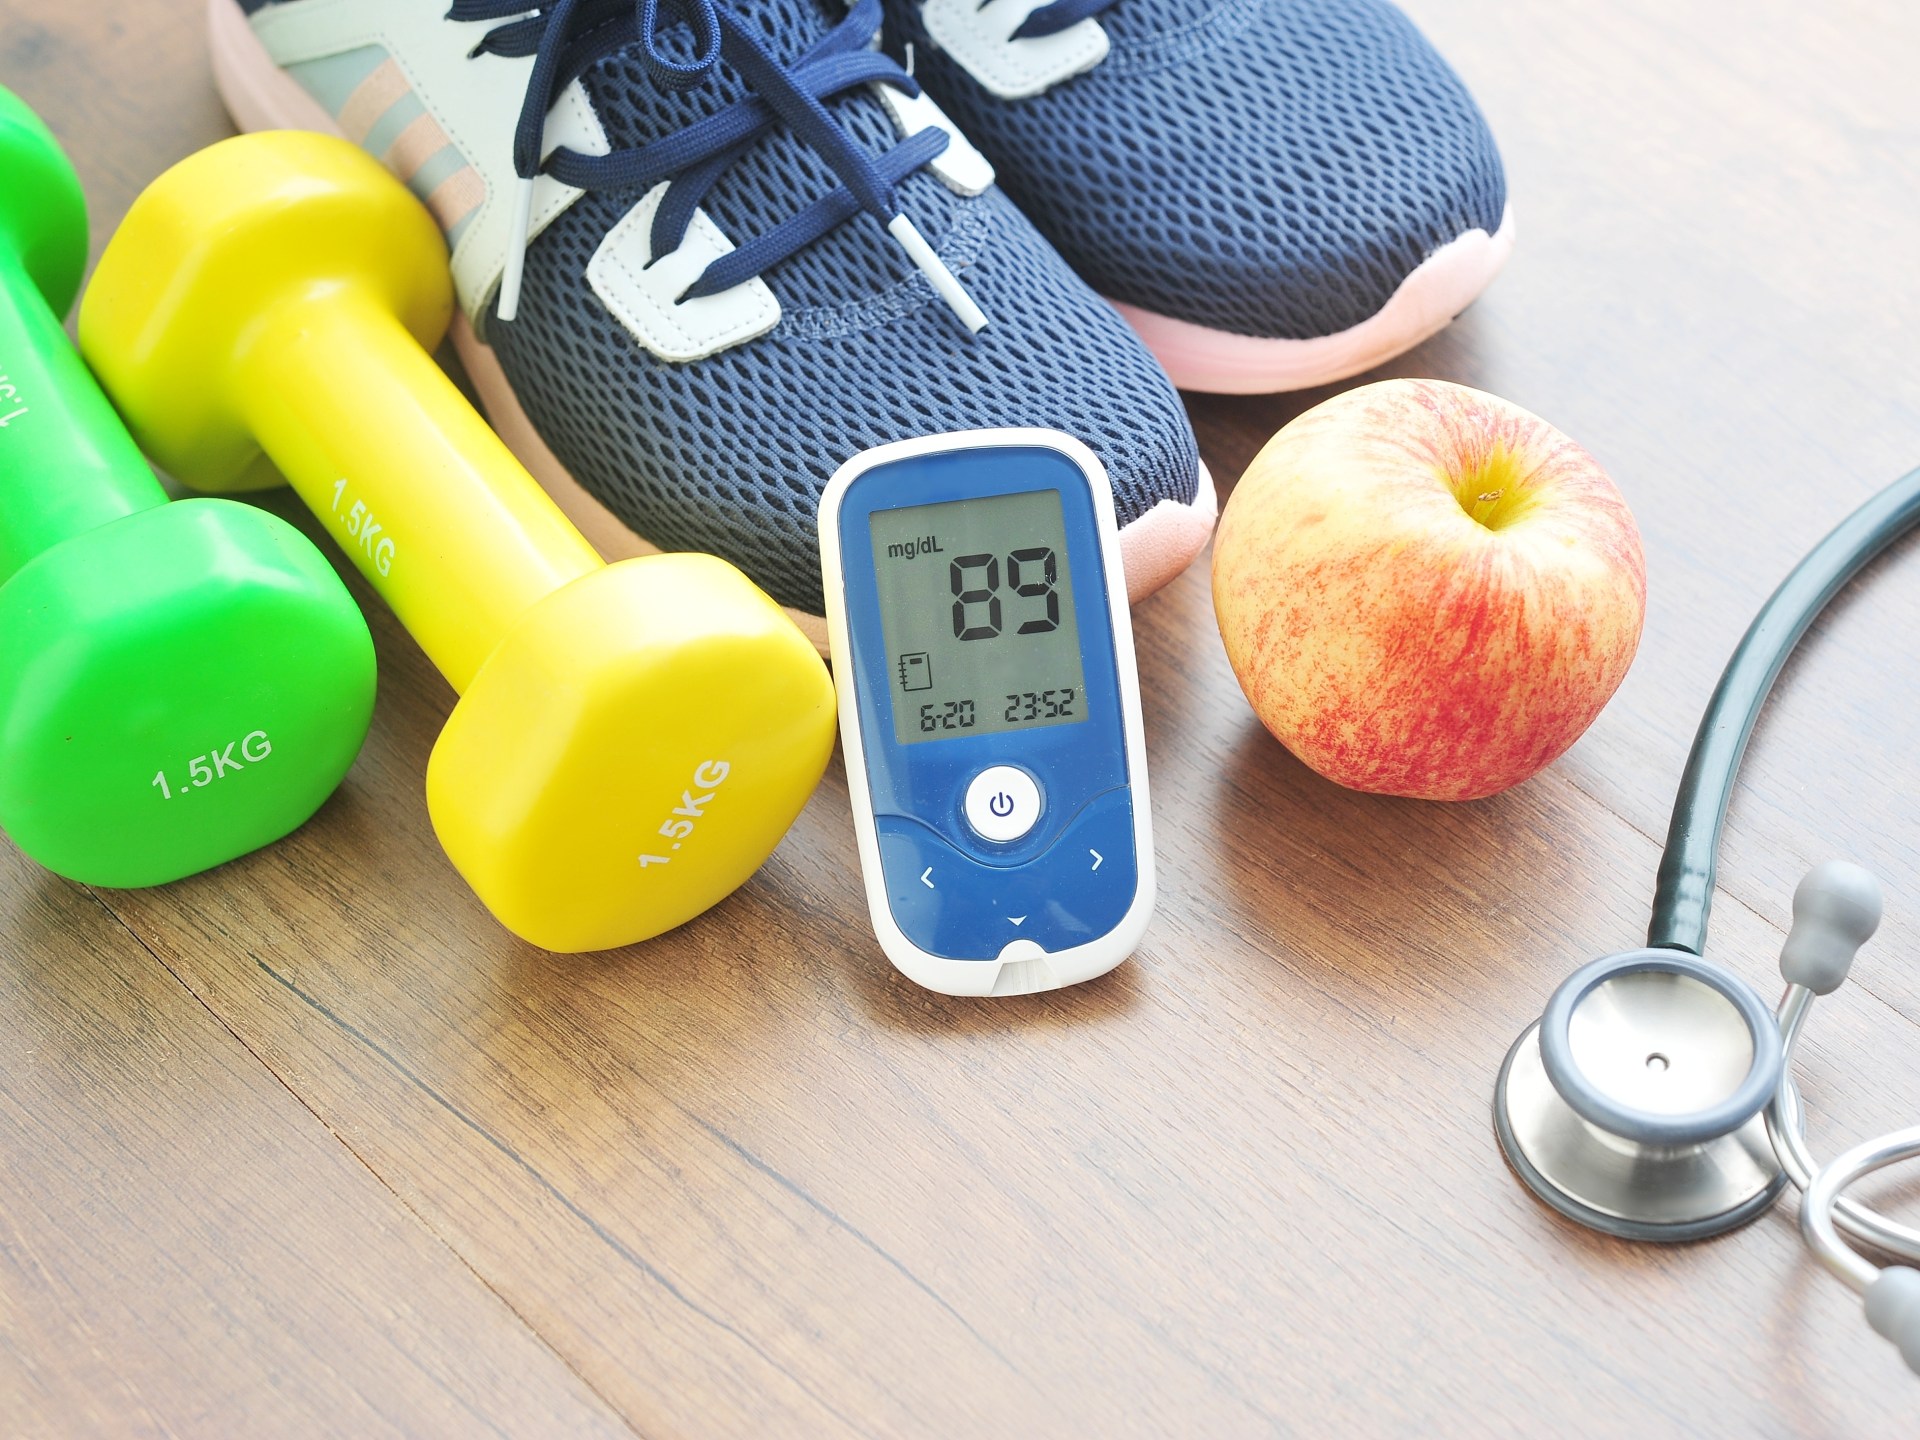 ما الرياضات المناسبة لمرضى السكري؟ | صحة – البوكس نيوز